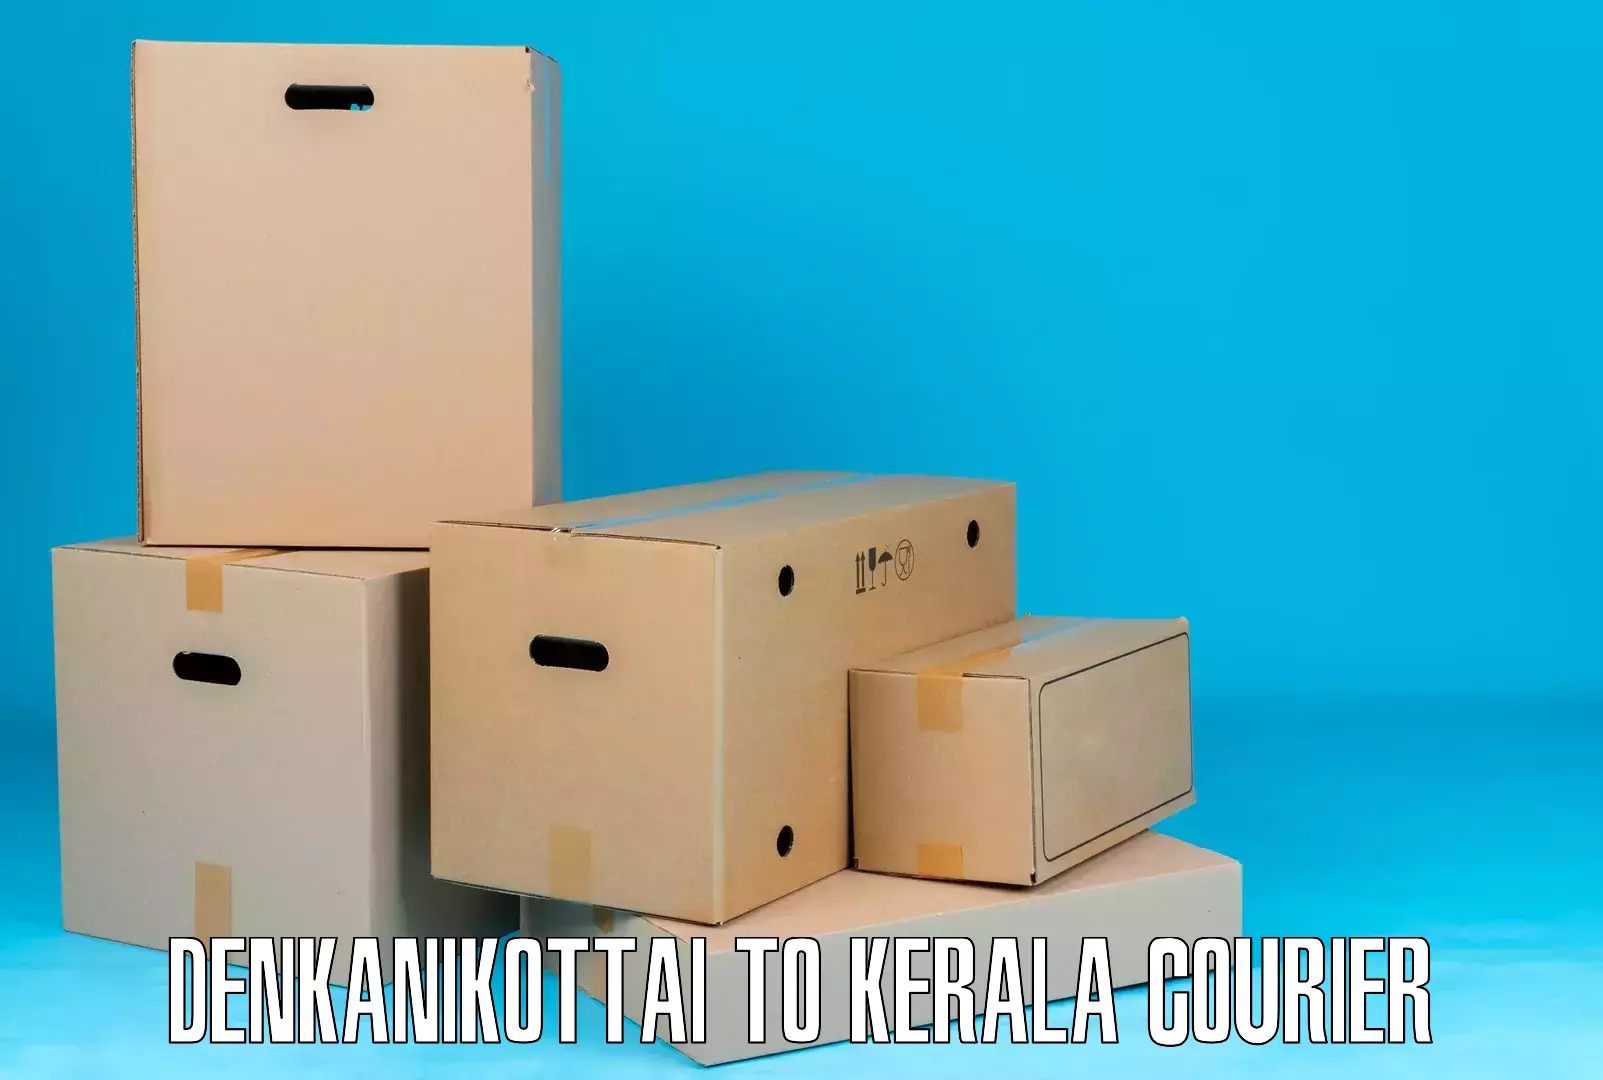 24-hour courier service Denkanikottai to Kothamangalam